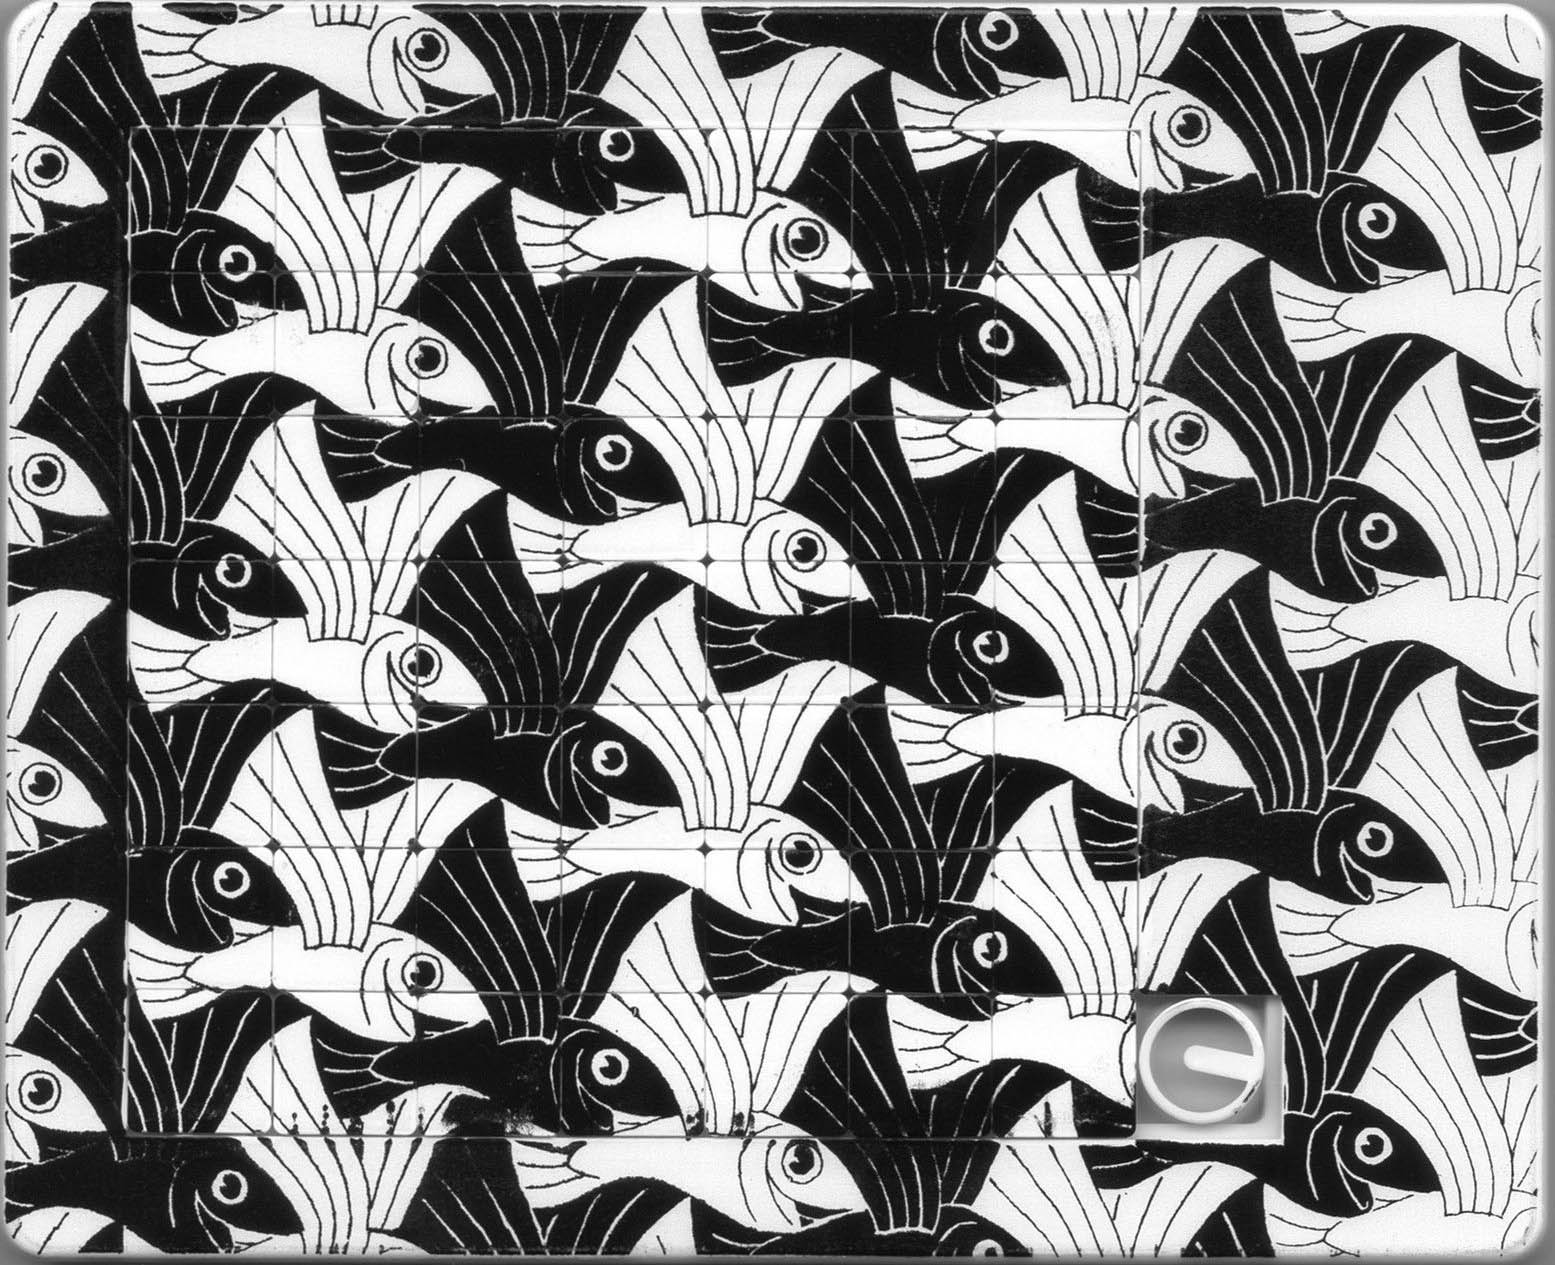 77-art-Escher symmetry 73 Flying Fish.